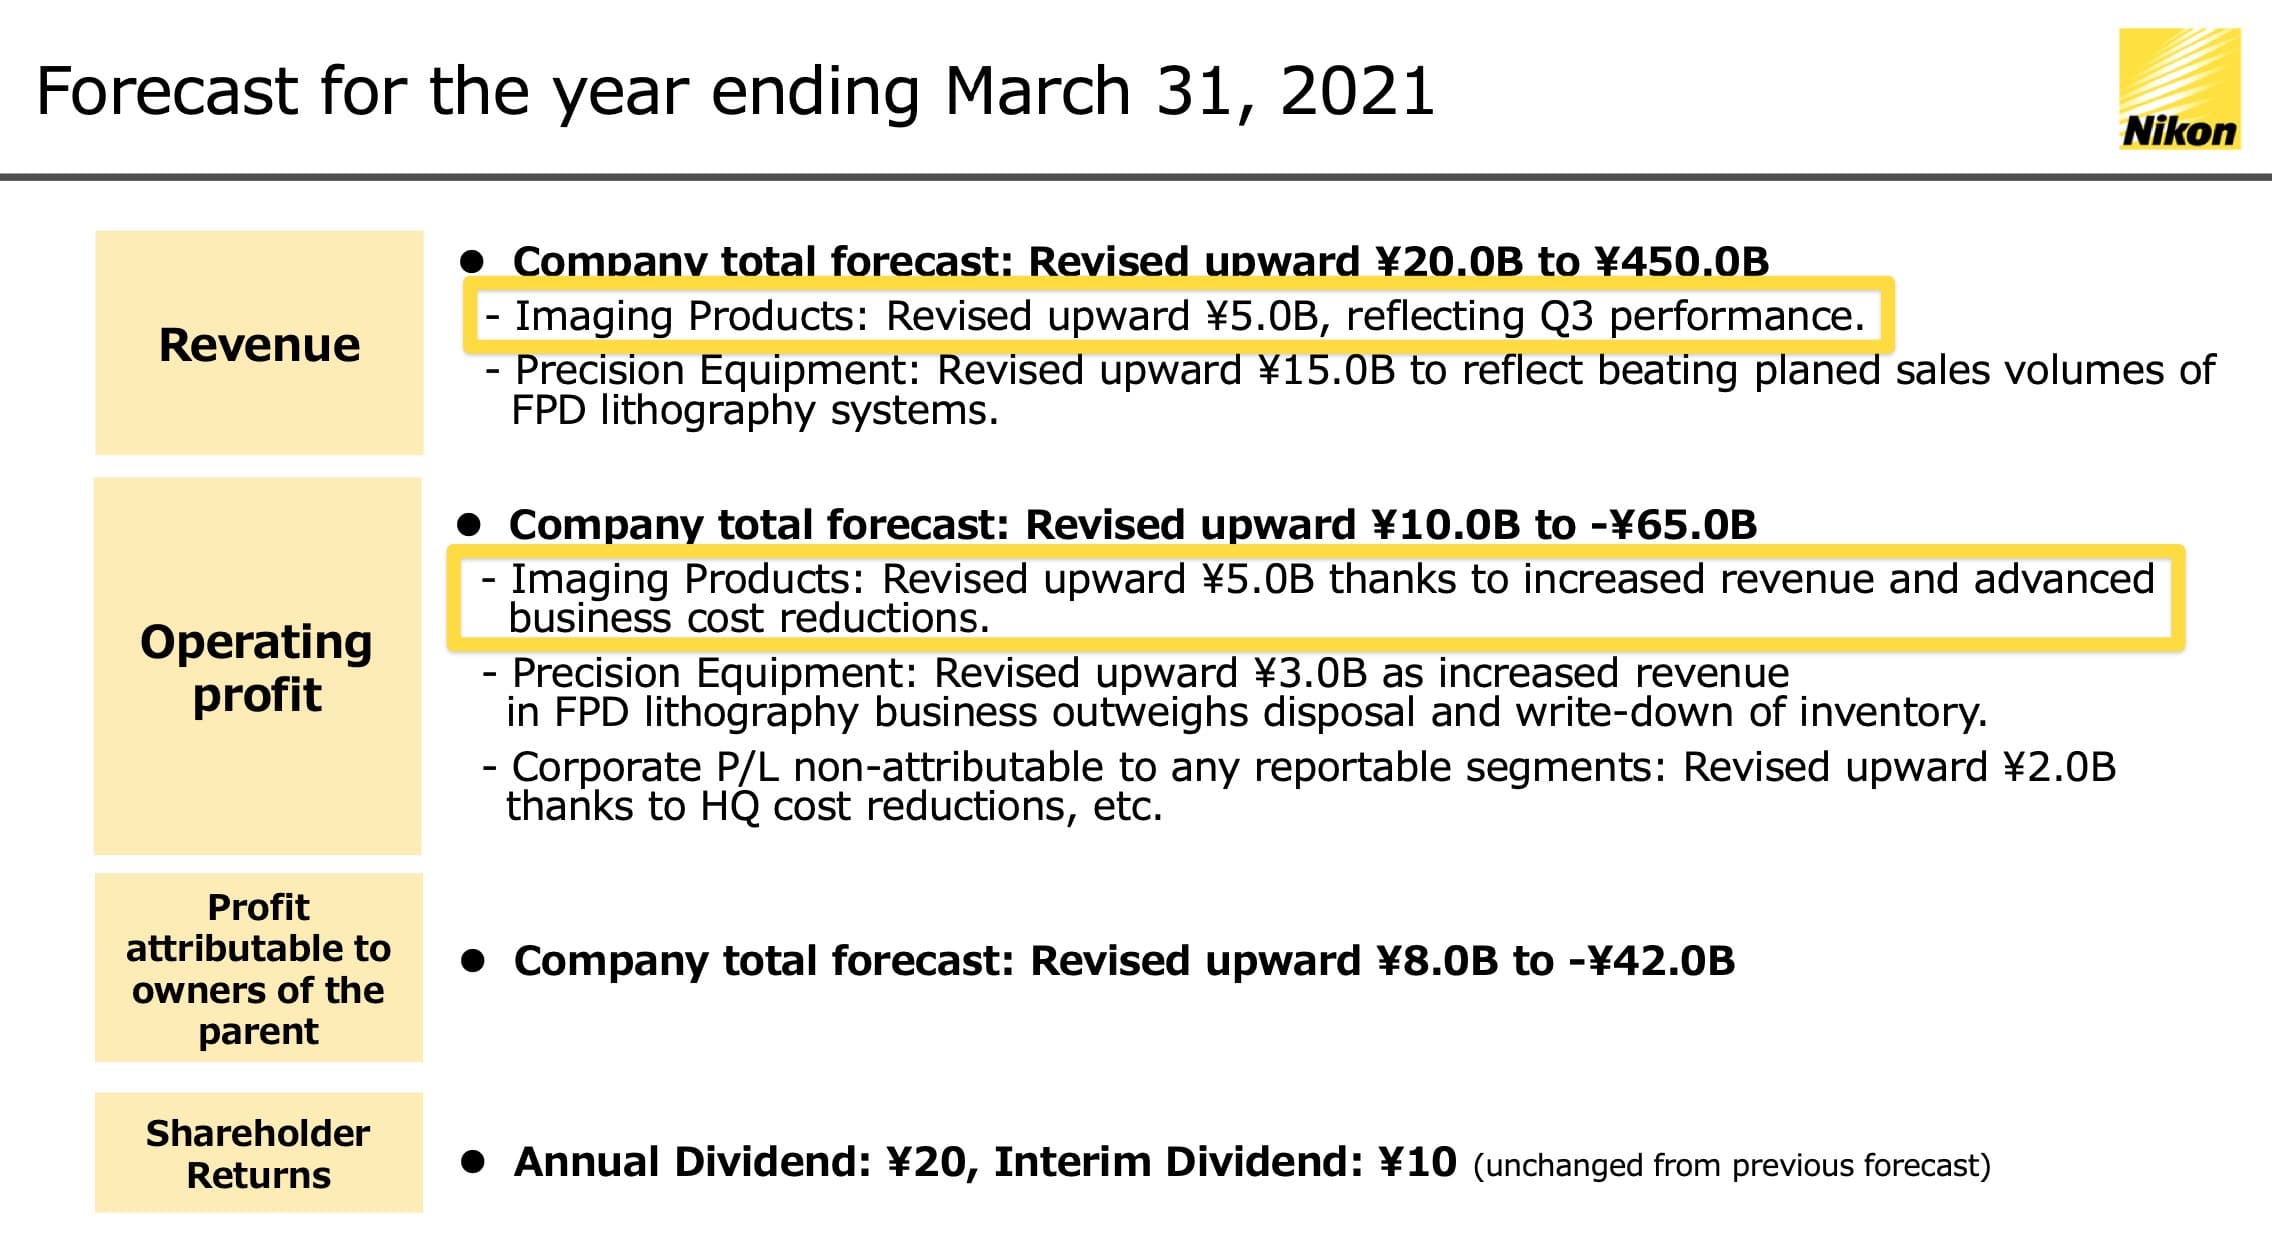 Báo cáo tài chính quý III cho thấy doanh thu Nikon giảm nặng, tận 2 con số!